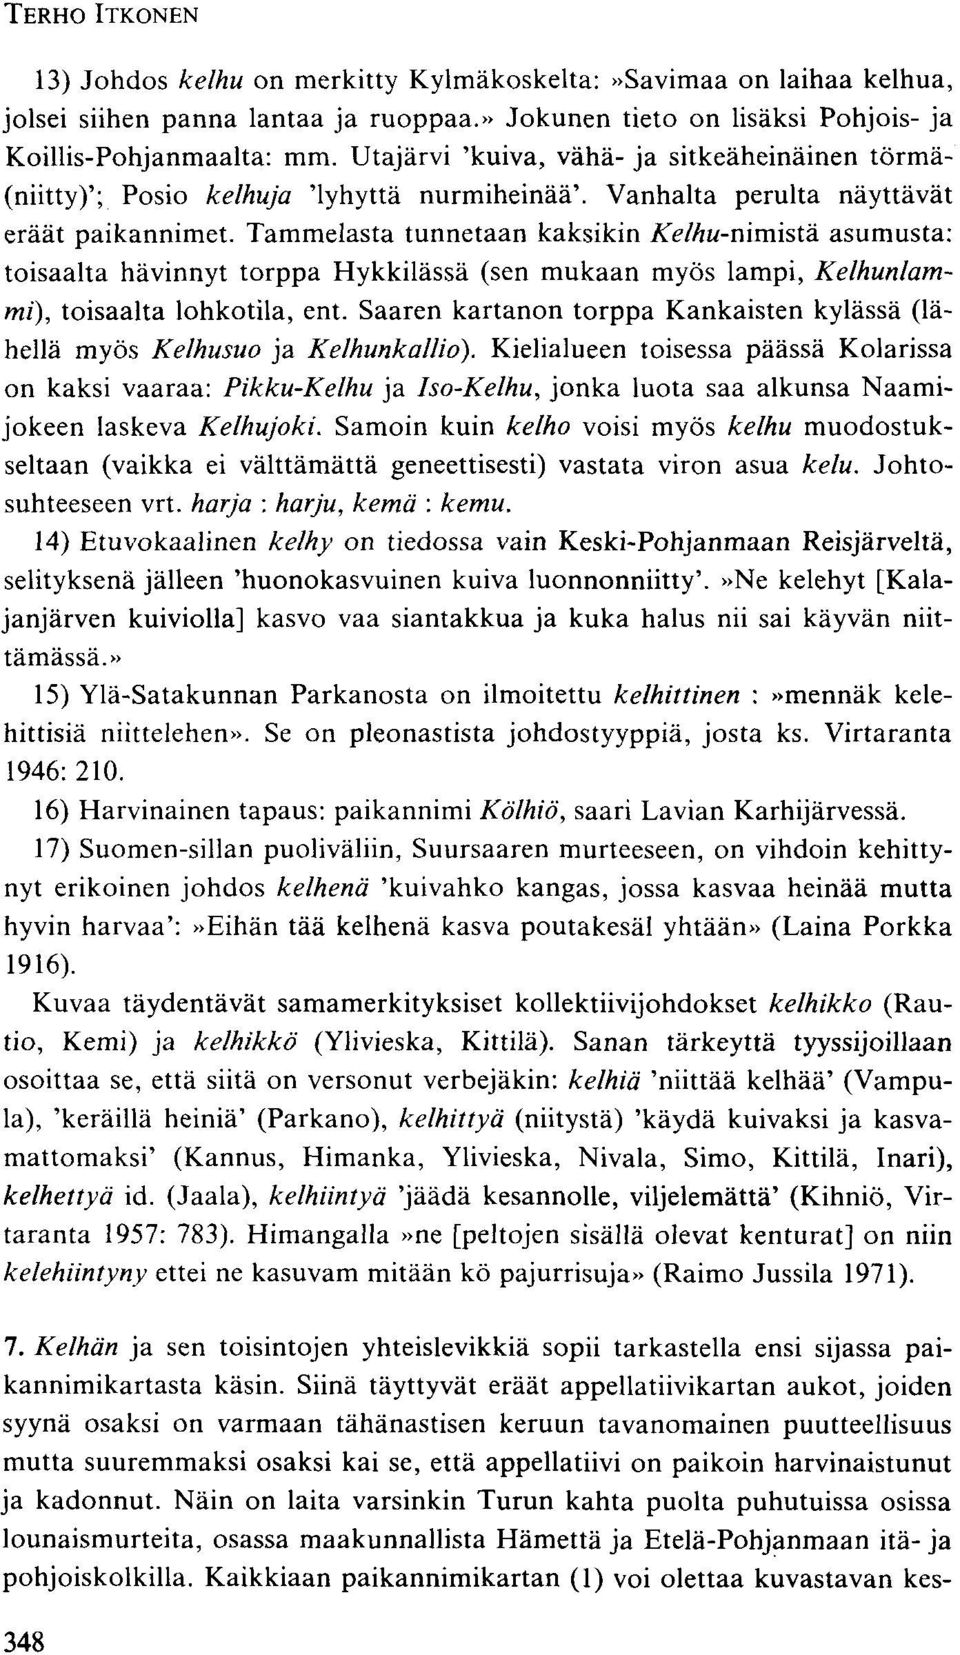 asumusta: toisaalta hävinnyt torppa Hykkilässä (sen mukaan myös lampi, Kelhunlammi), toisaalta lohkotila, ent. Saaren kartanon torppa Kankaisten kylässä (lähellä myös Kelhusuo ja Kelhunkalliö).